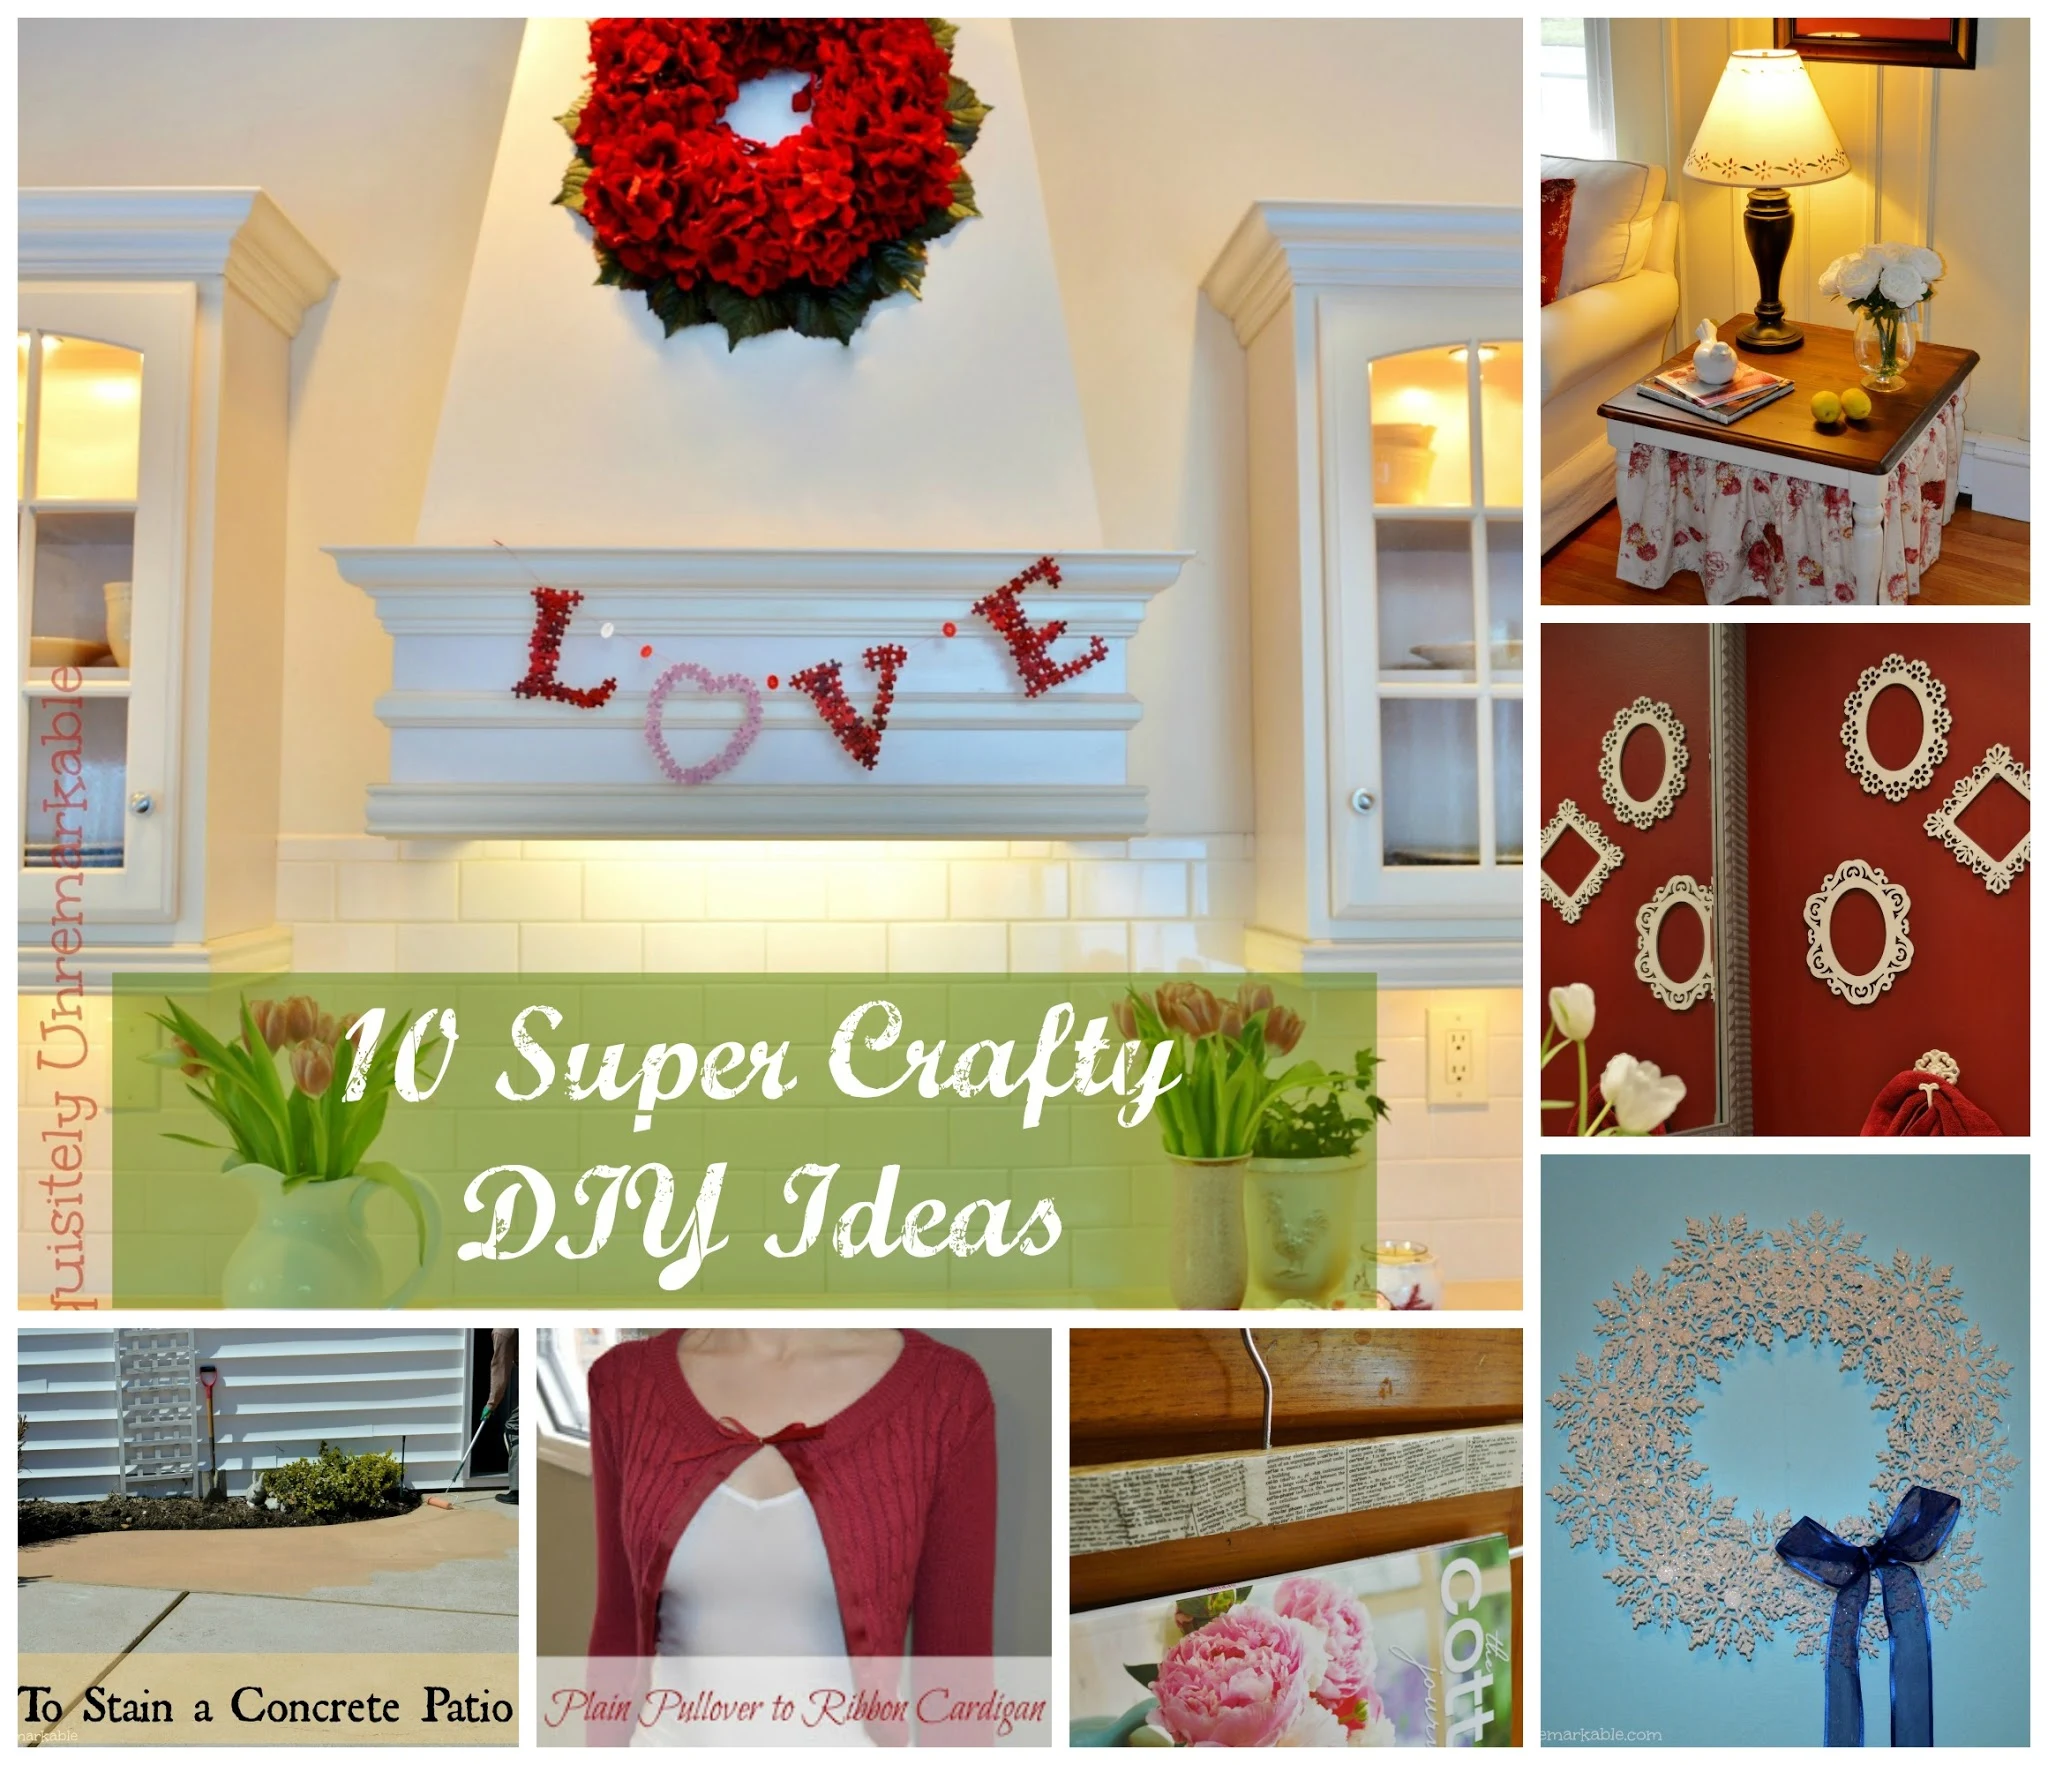 10 Super Crafty DIY Ideas